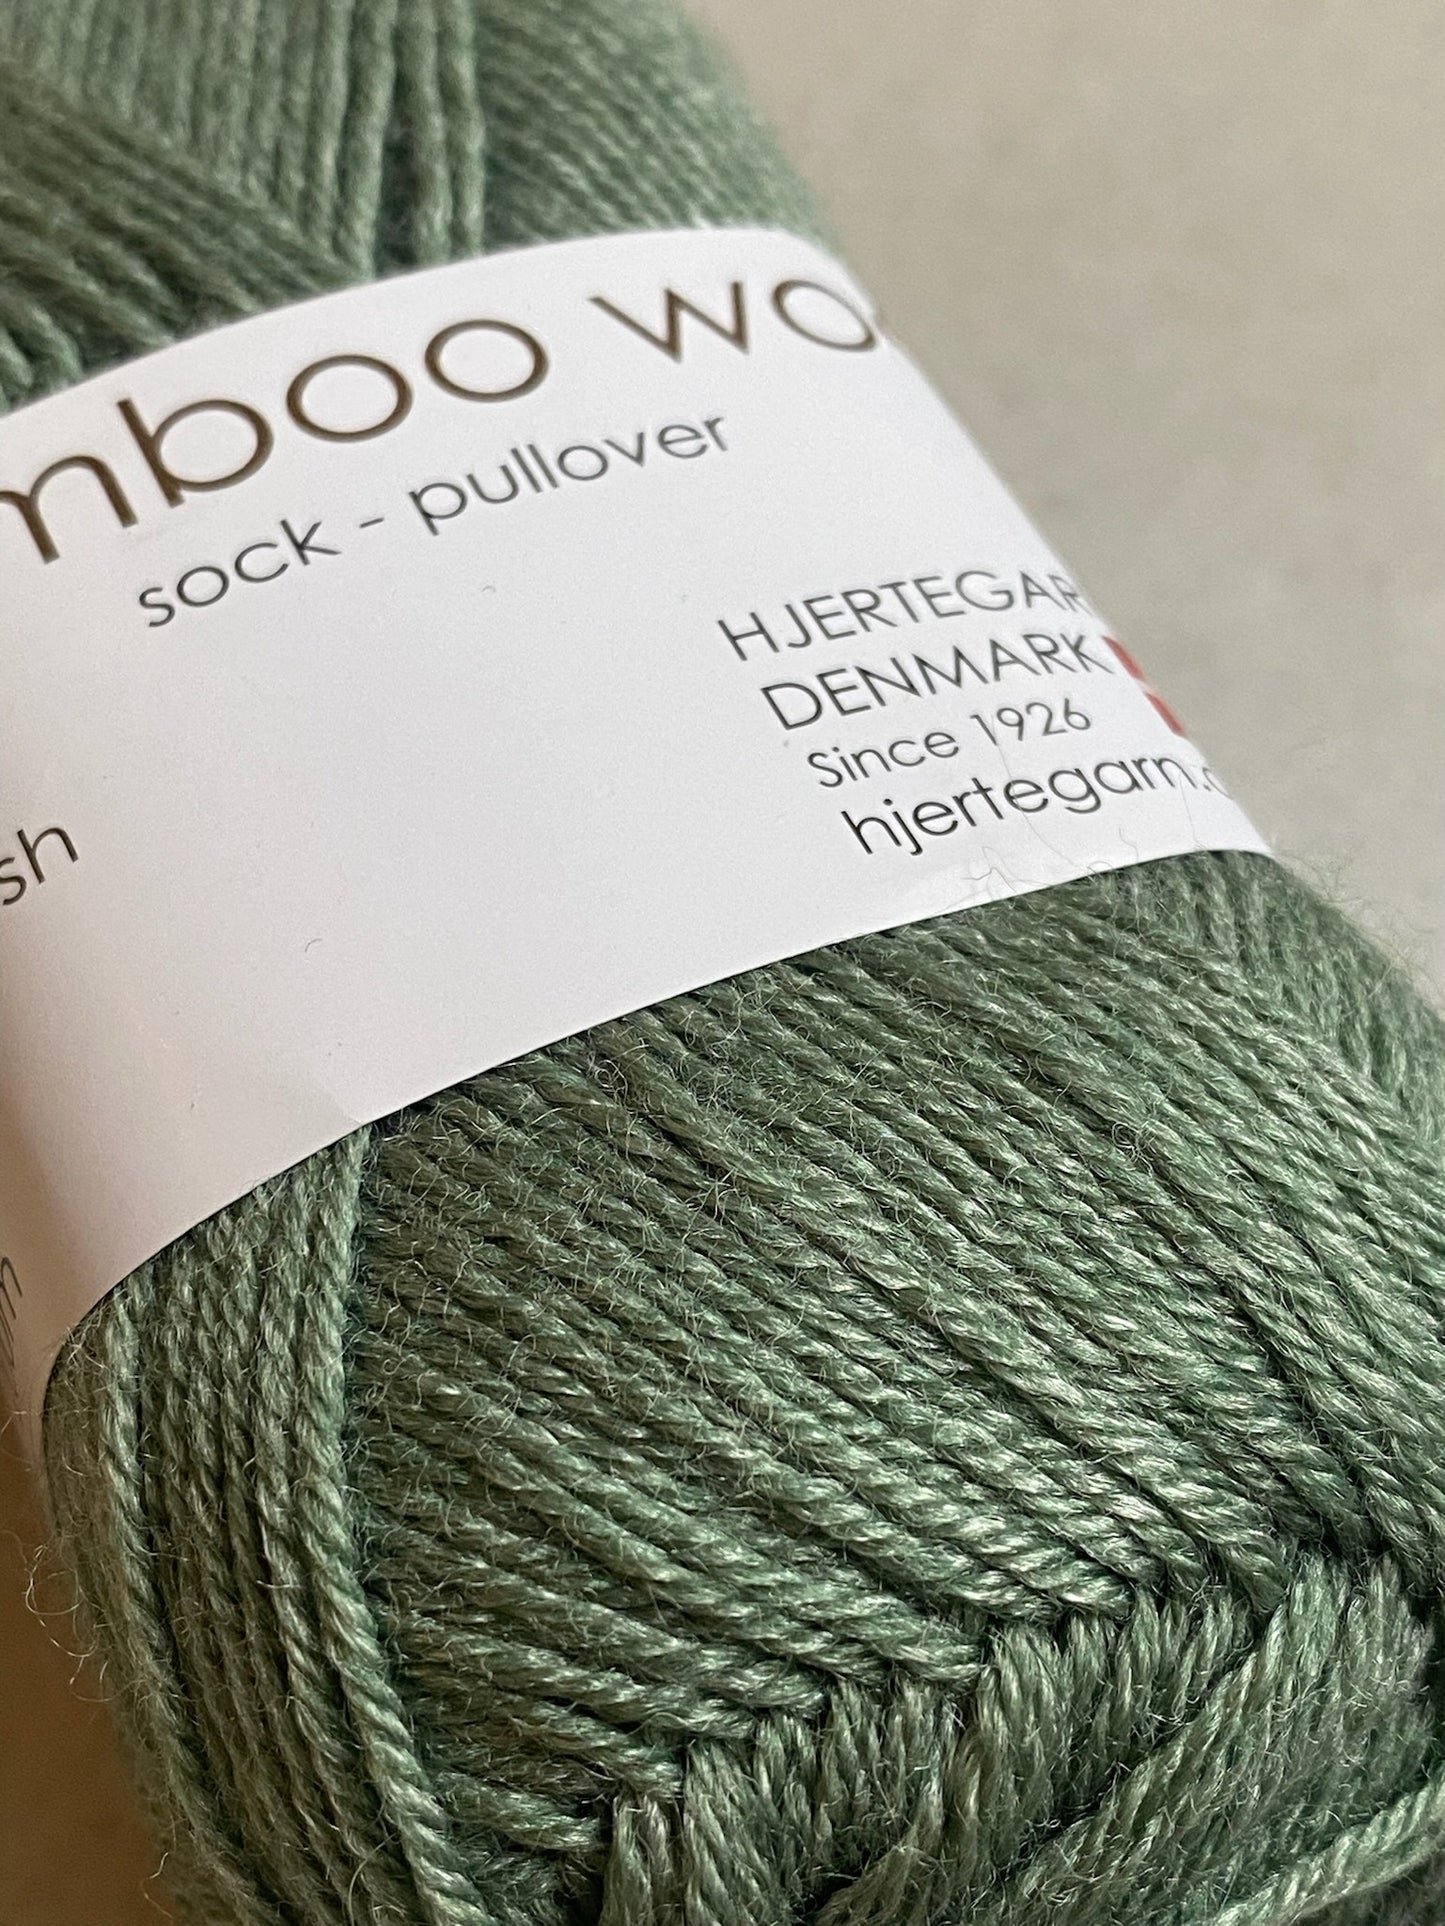 Bamboo wool